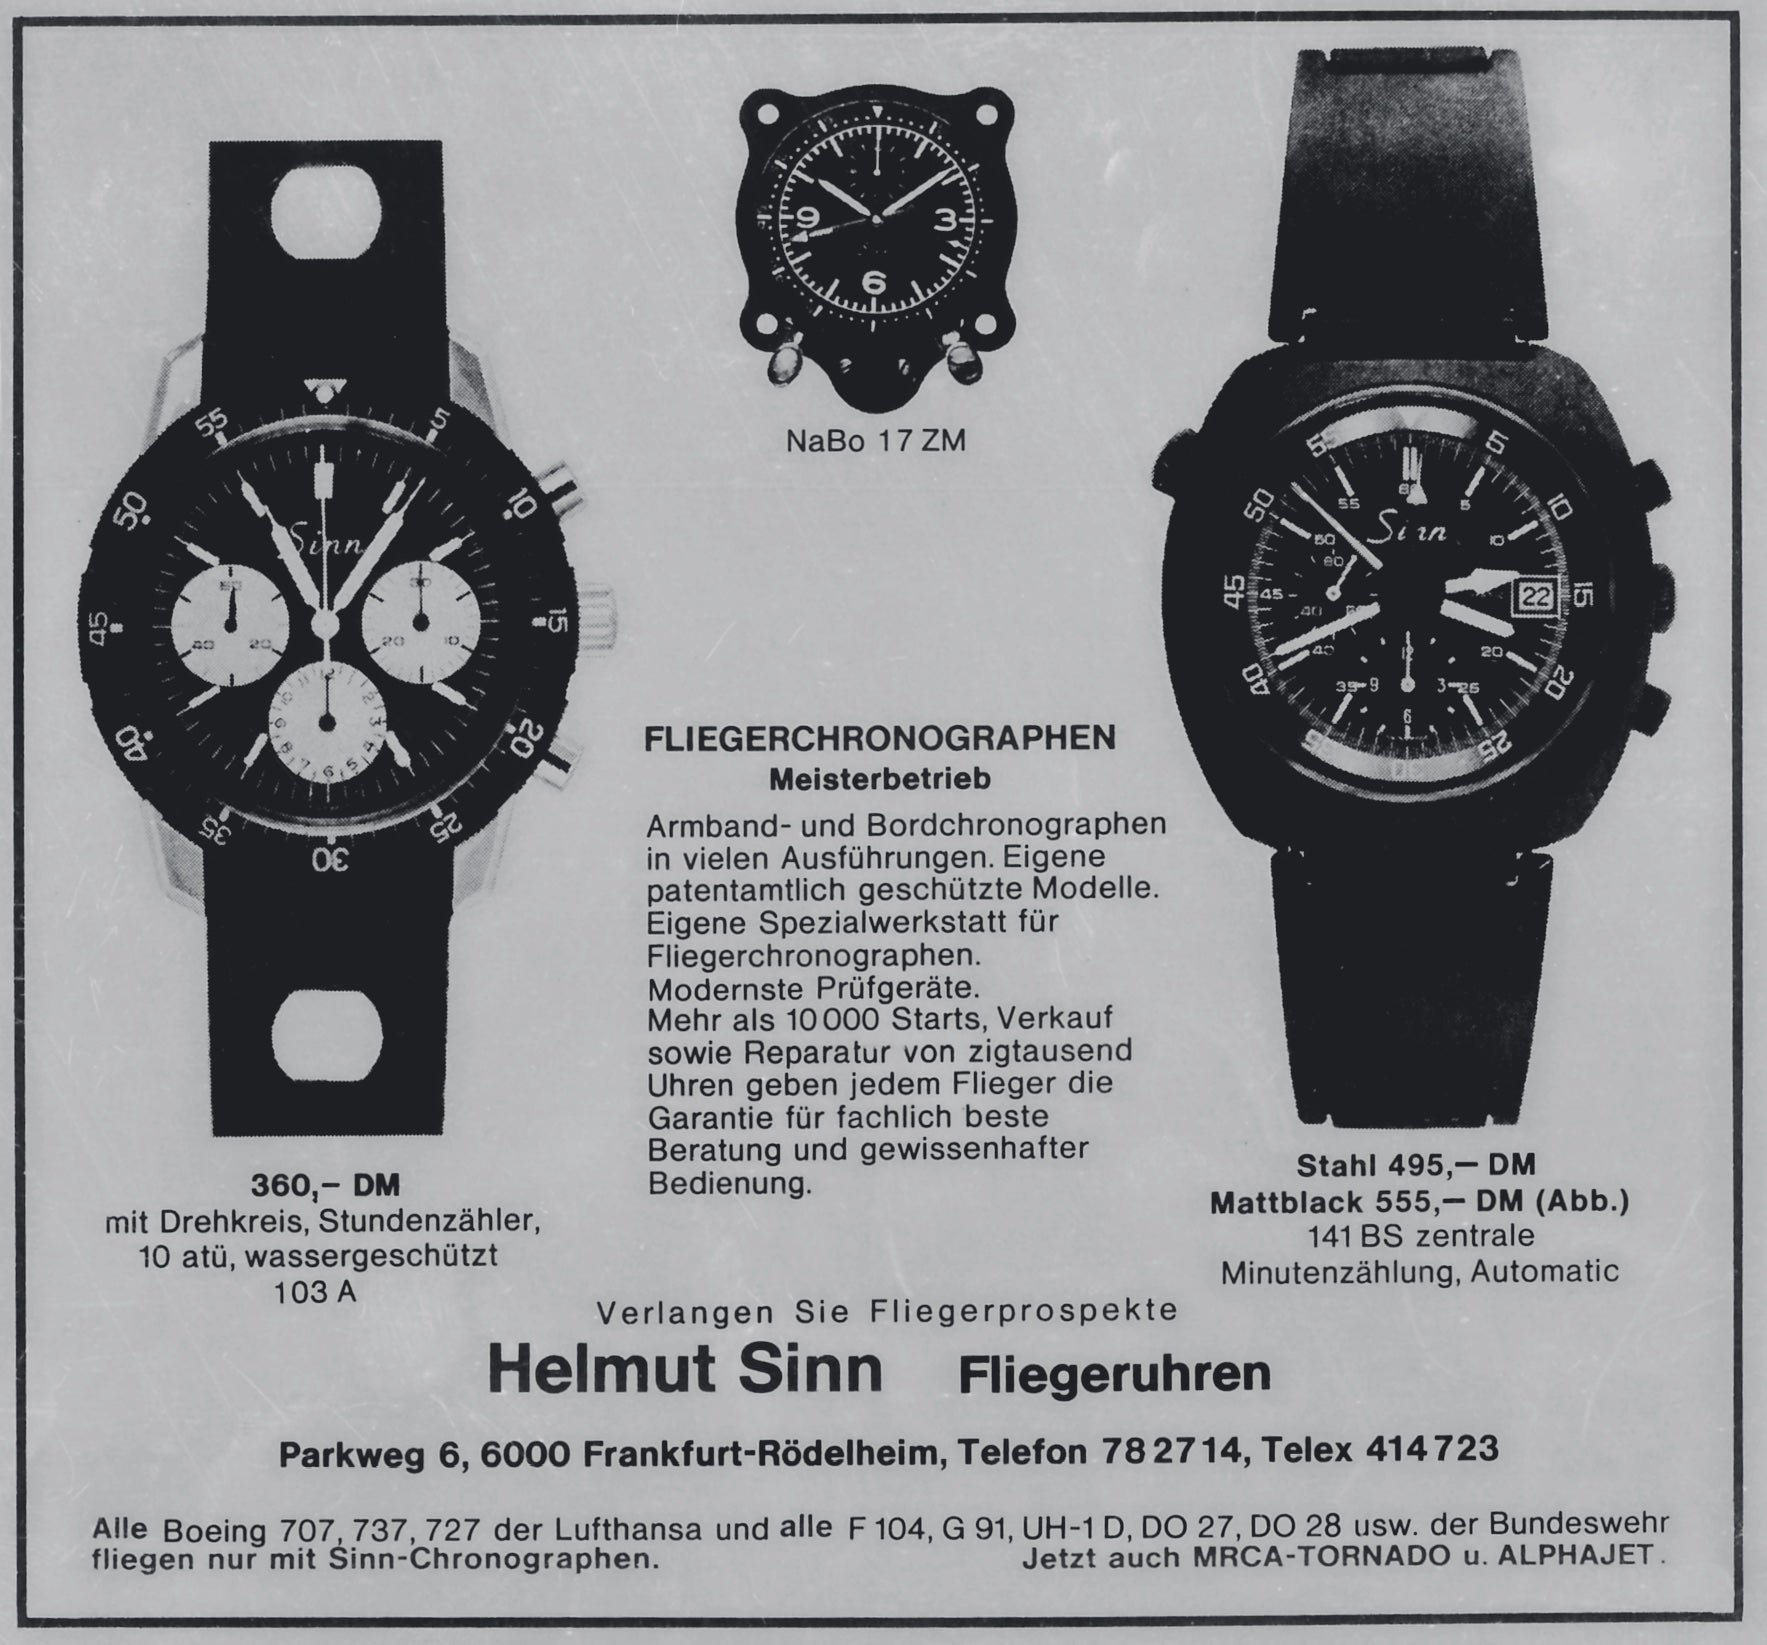 A Helmut Sinn advert from 1970